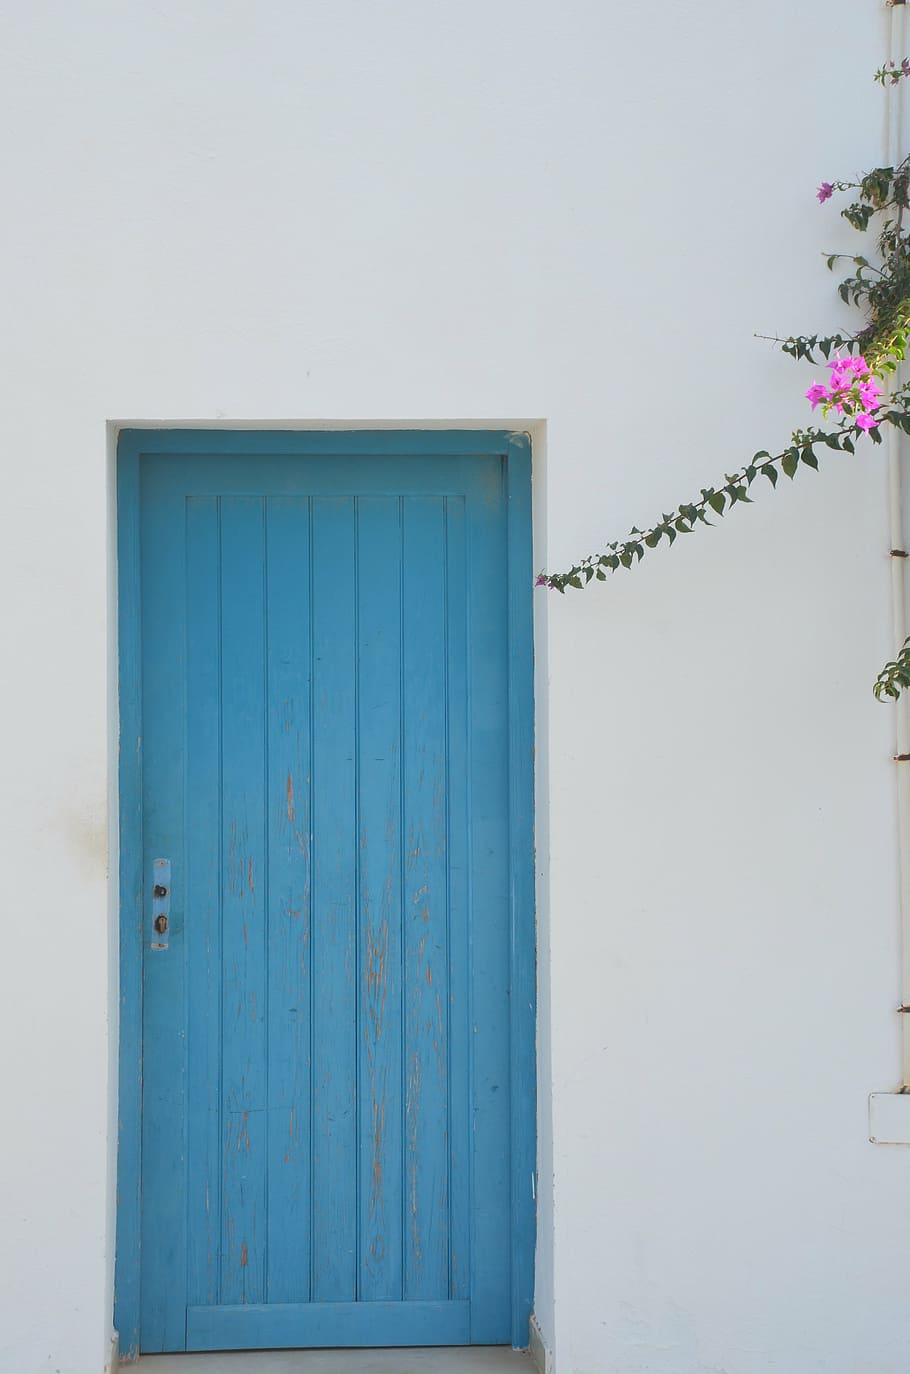 fechado, azul, de madeira, porta, branco azul, grécia, casa, branco, flor, arquitetura